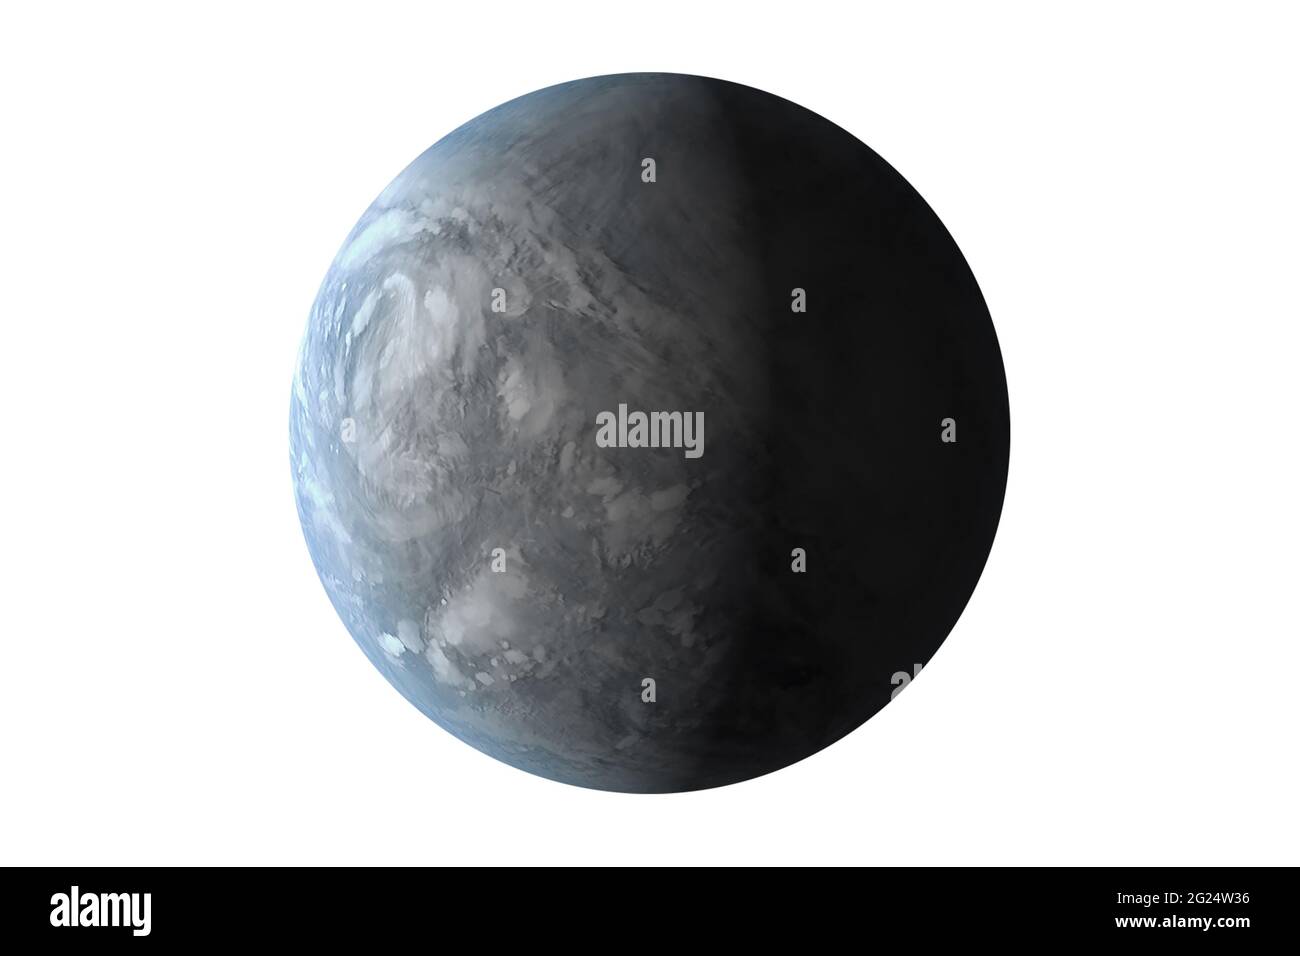 Exoplanète isolée sur fond blanc. Des éléments de cette image ont été fournis par la NASA. Photo de haute qualité Banque D'Images